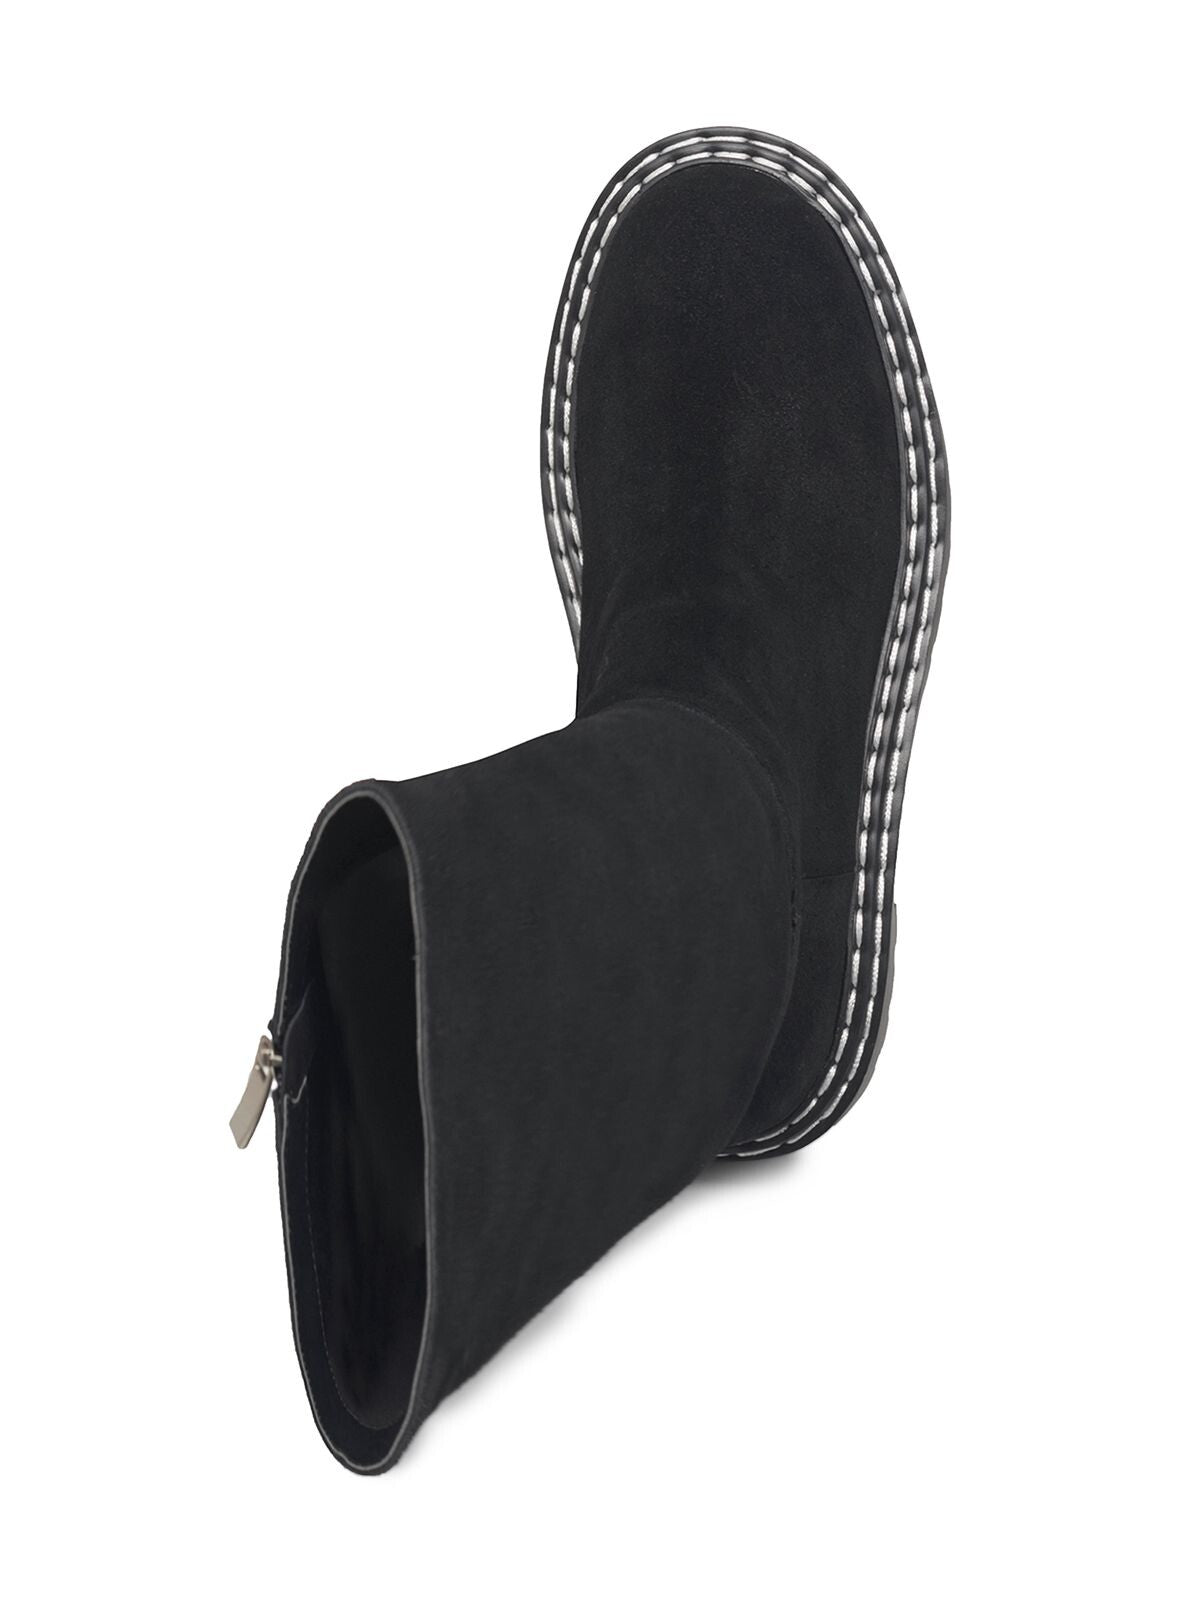 SPLENDID Womens Black Comfort Lug Sole Amalia Round Toe Block Heel Zip-Up Leather Heeled Boots 8